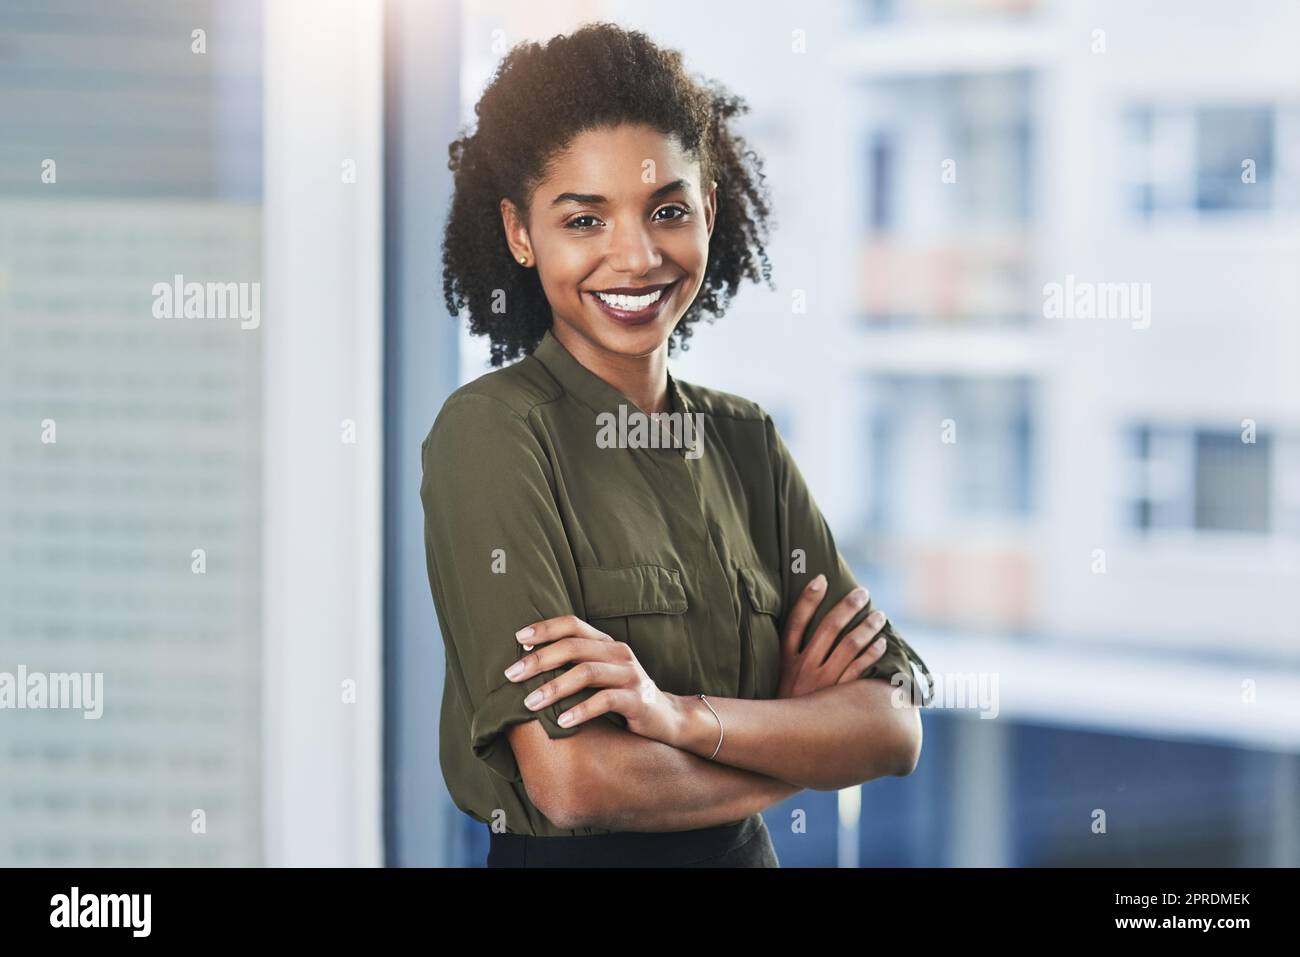 Sie alle lächeln, jede Stunde der Schicht. Porträt einer selbstbewussten jungen Geschäftsfrau, die mit gefalteten Armen in ihrem Büro steht. Stockfoto